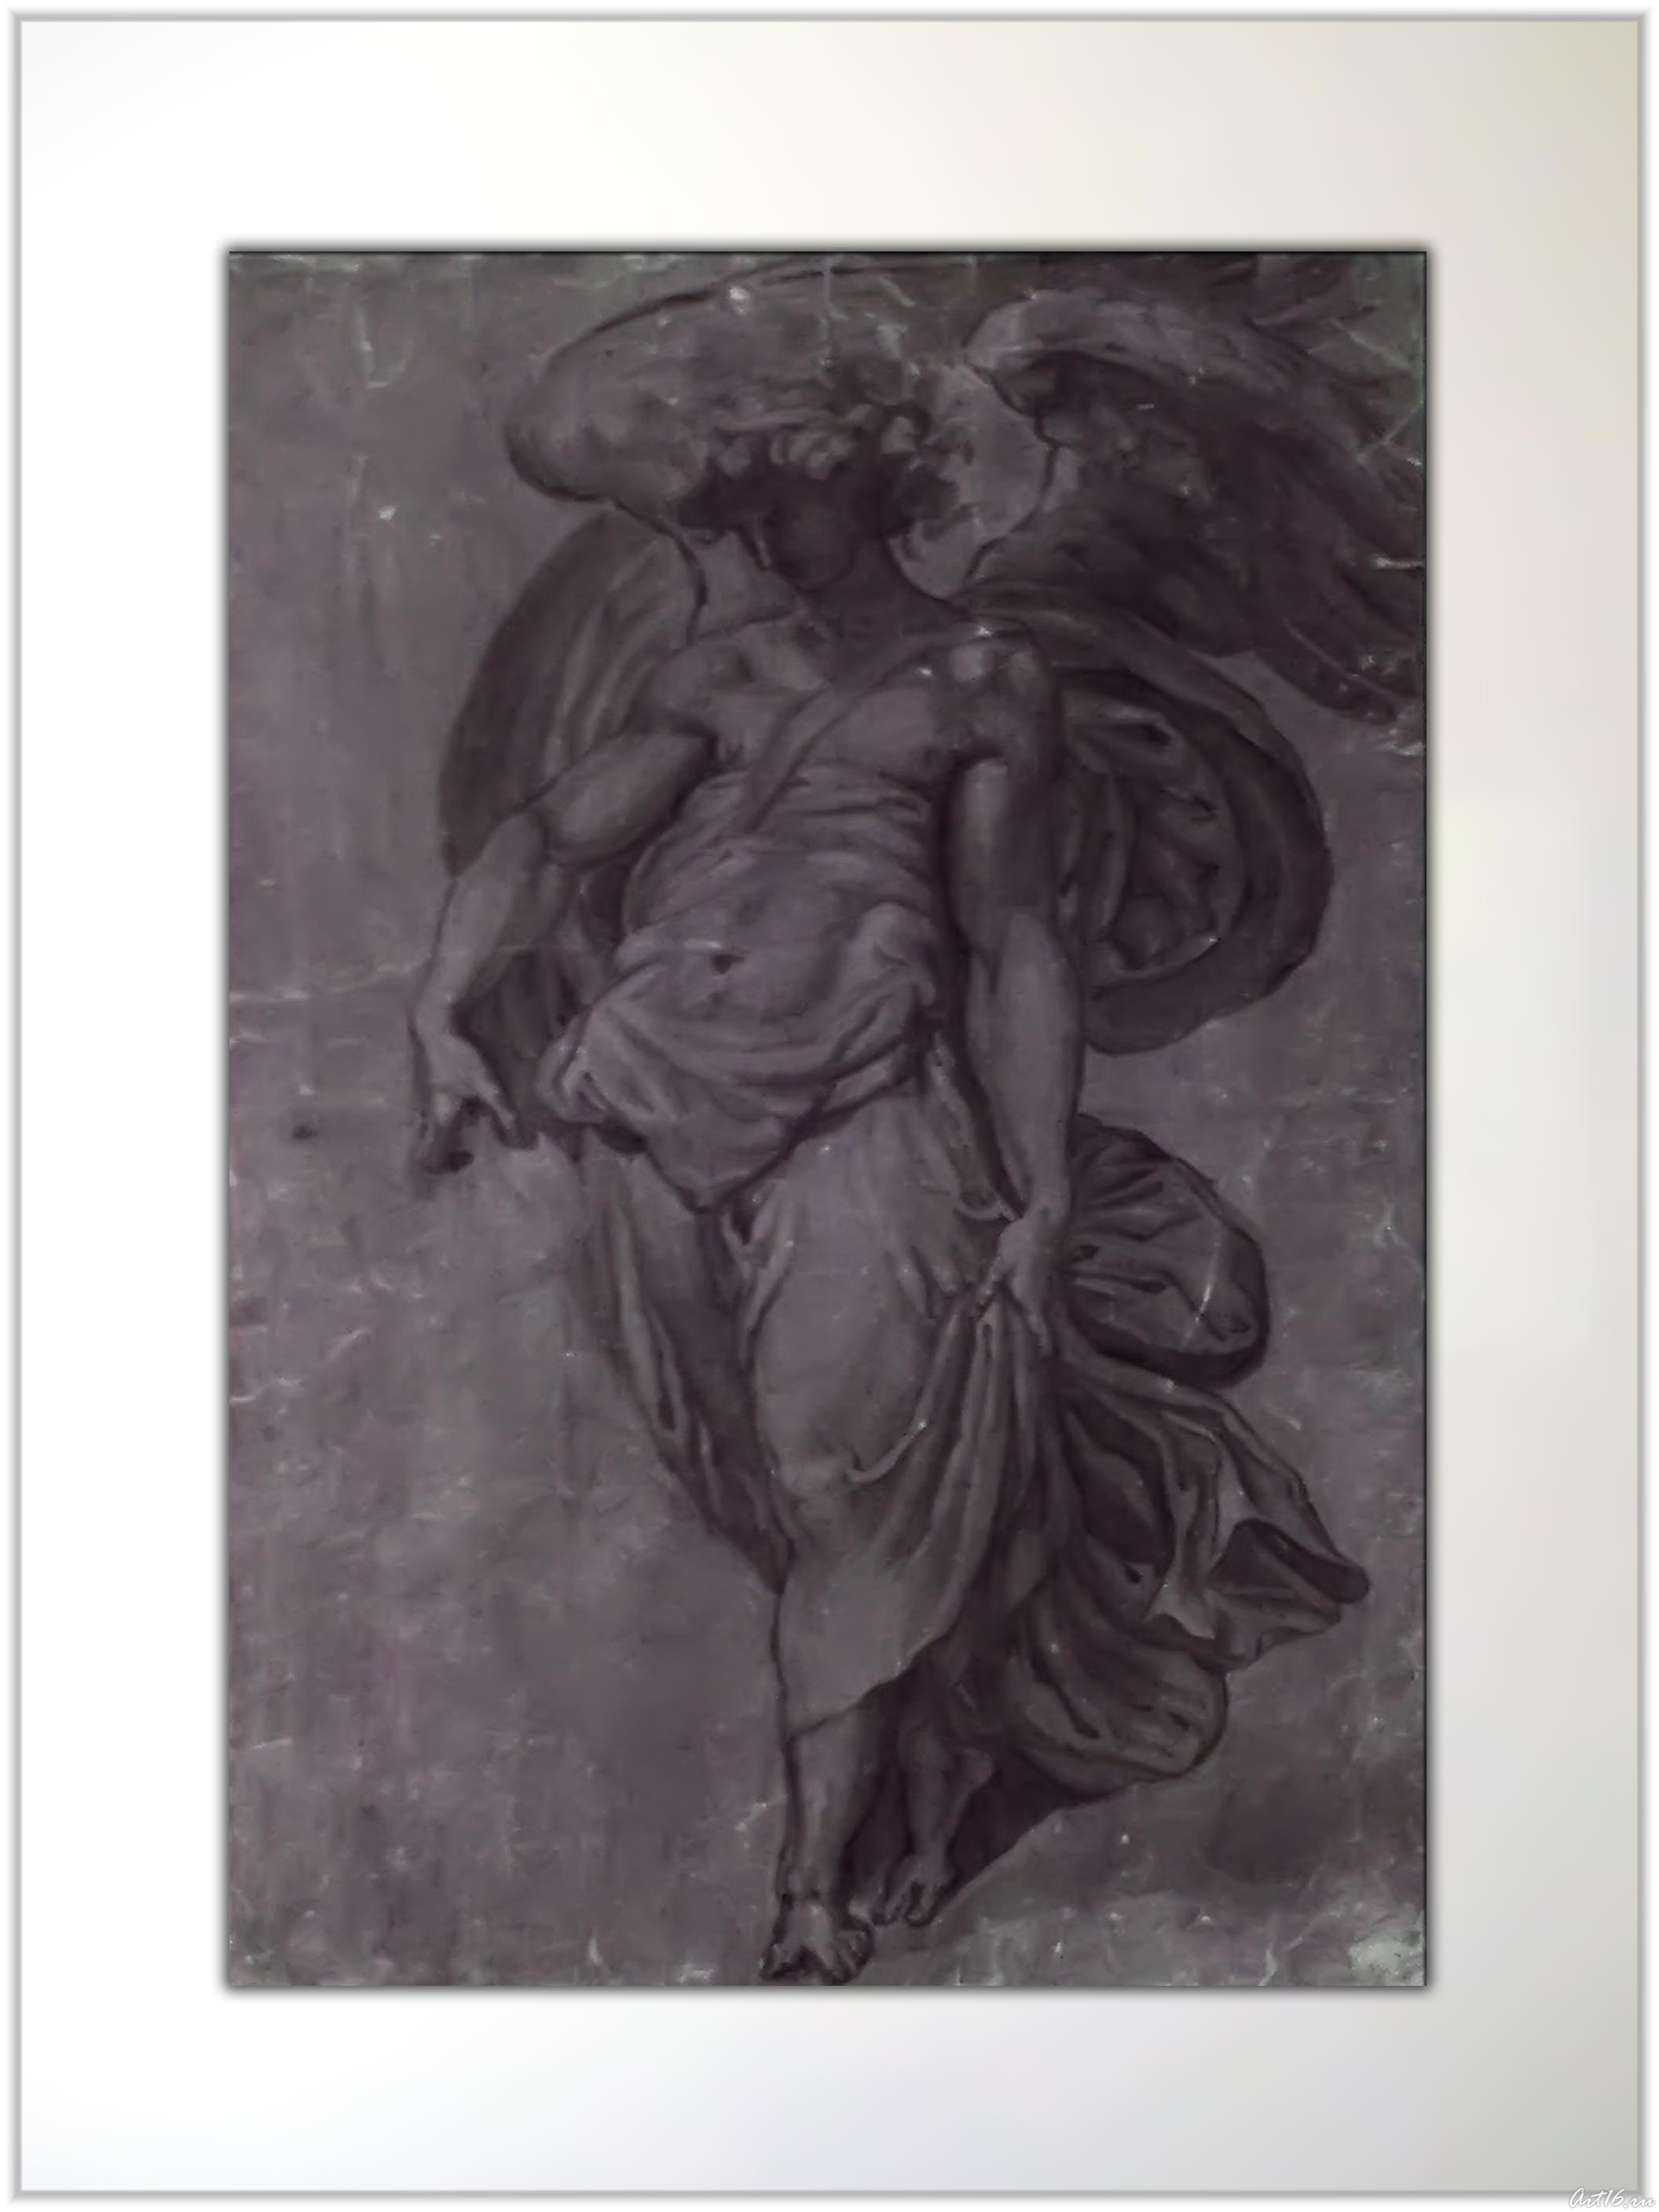 Товий с ангелом::От Дюрера до Рубенса. Миф в искусстве классической гравюры 